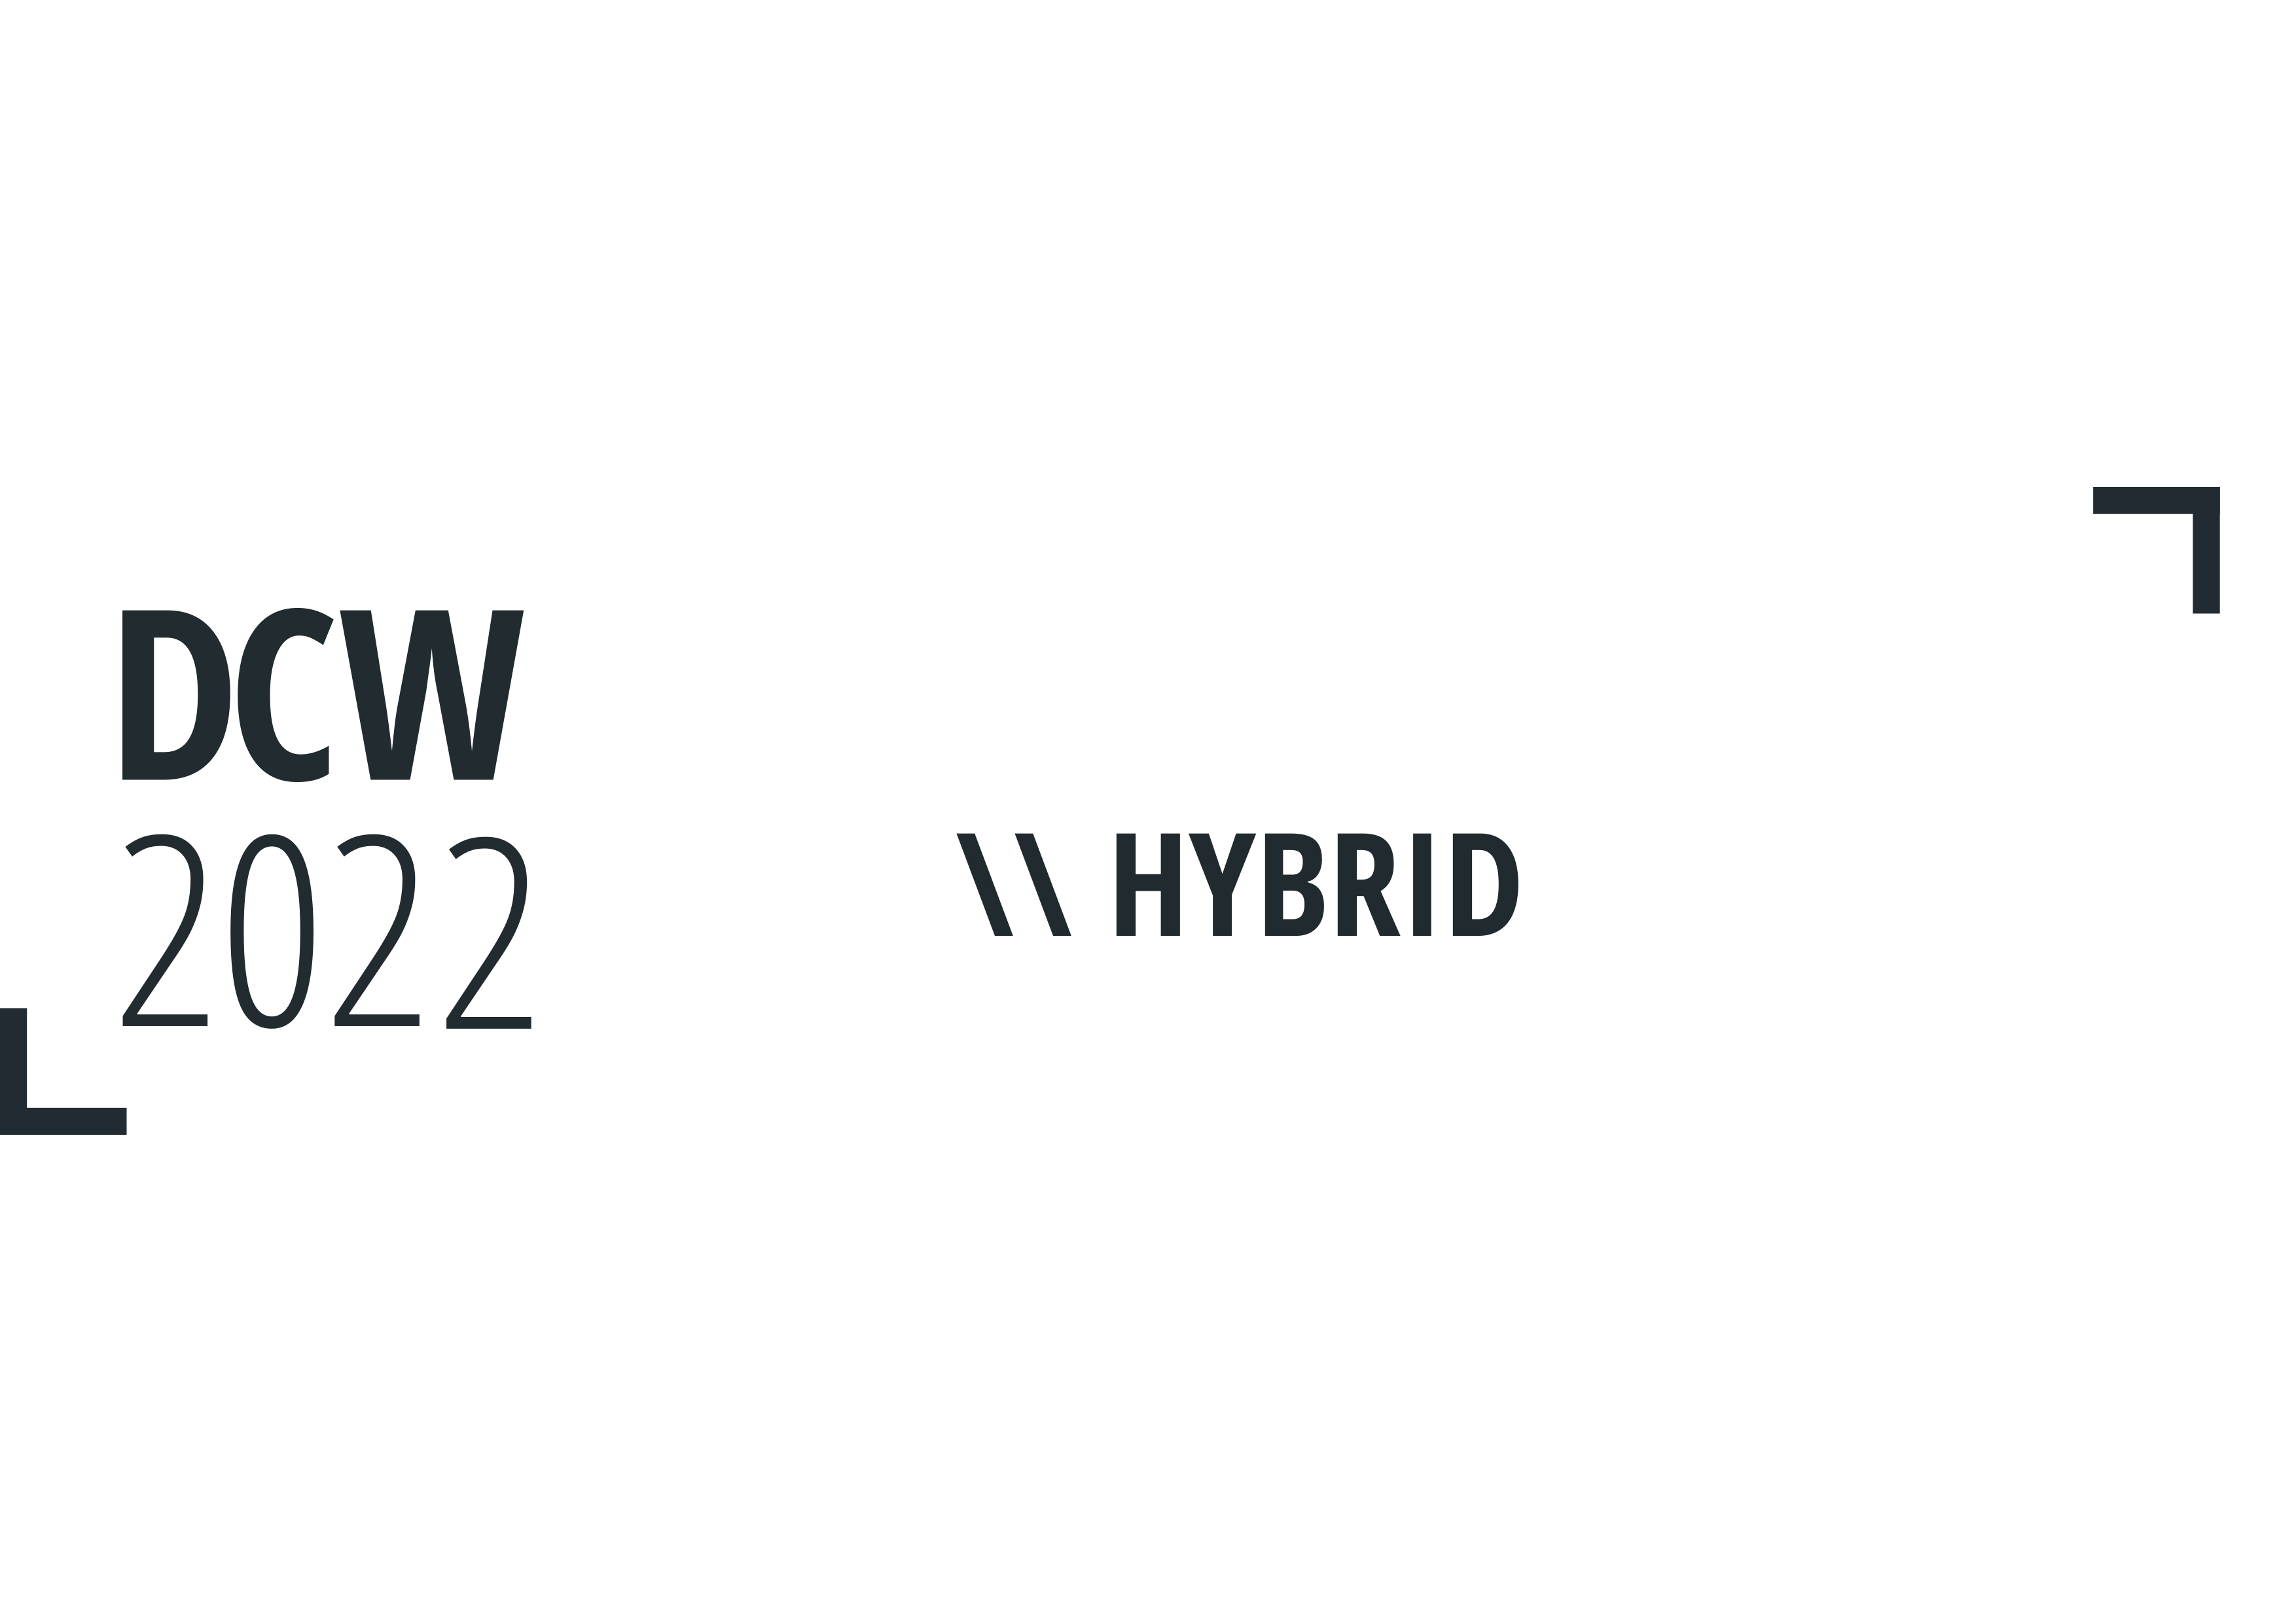 Detmold Conference Week